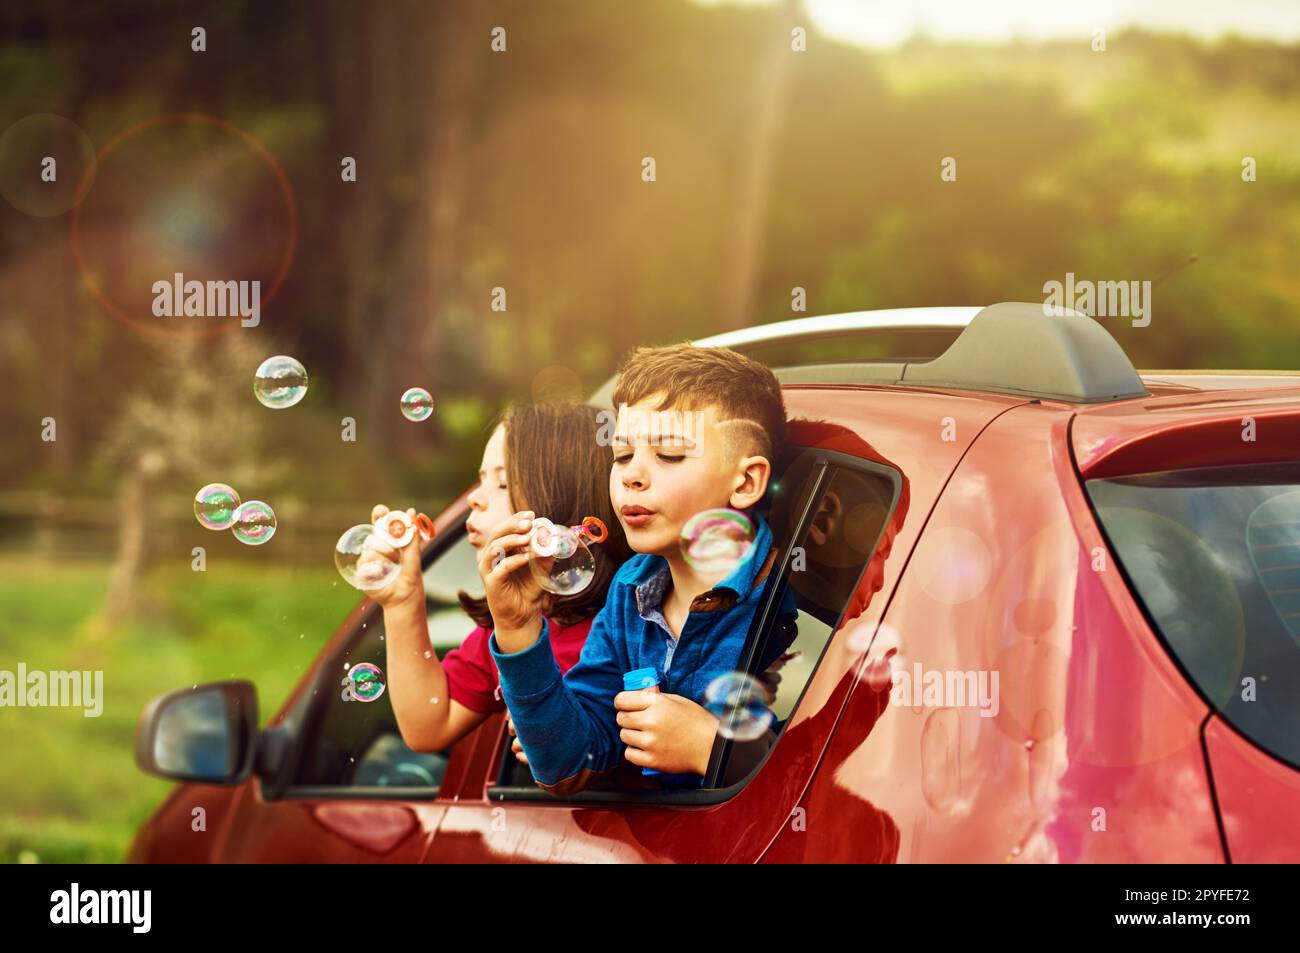 Er taumelt vor Spaß über. Zwei glückliche Kinder blasen Blasen, während sie sich zusammen aus einem Autofenster lehnten. Stockfoto